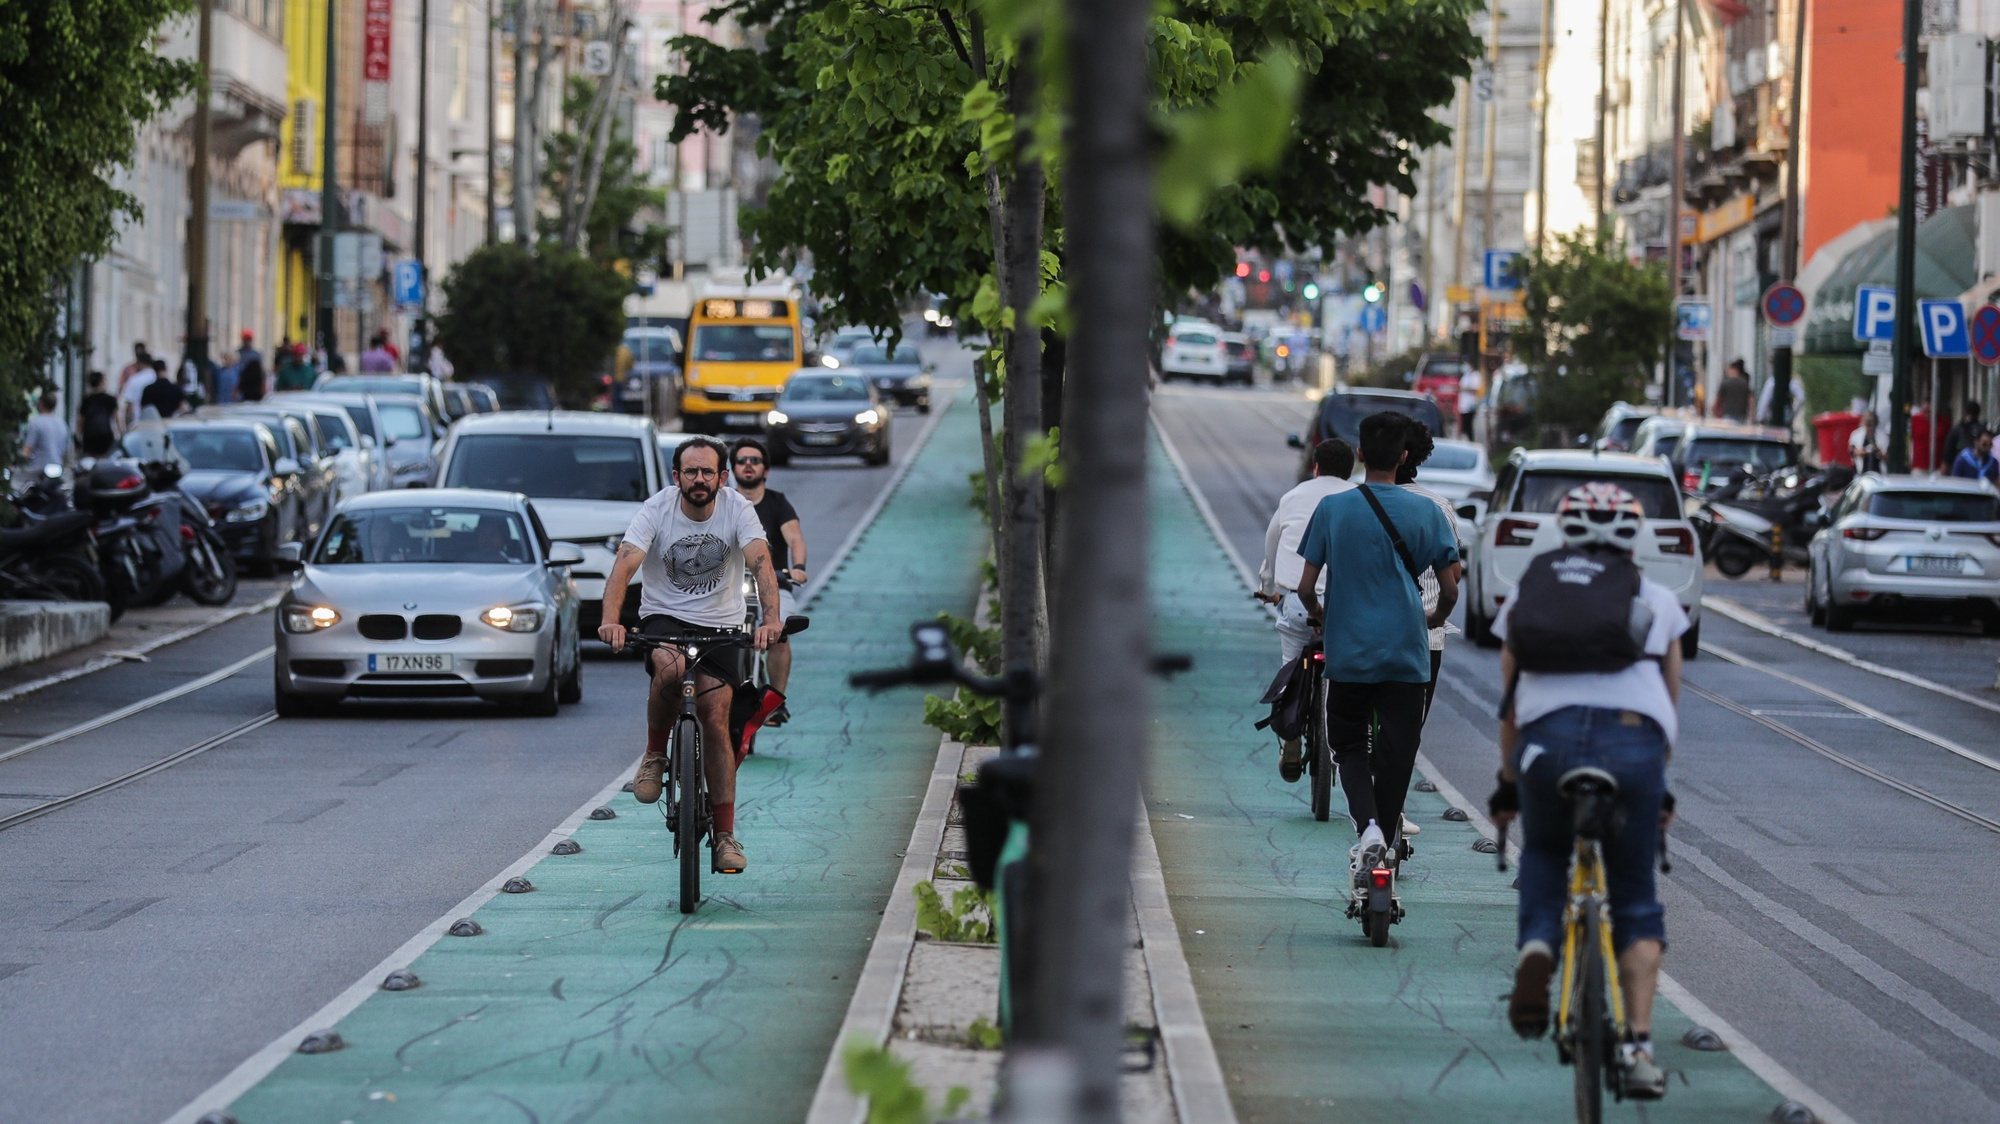 Utentes da ciclovia na Avenida Almirante Reis em Lisboa, 27 de maio de 2022. TIAGO PETINGA/LUSA